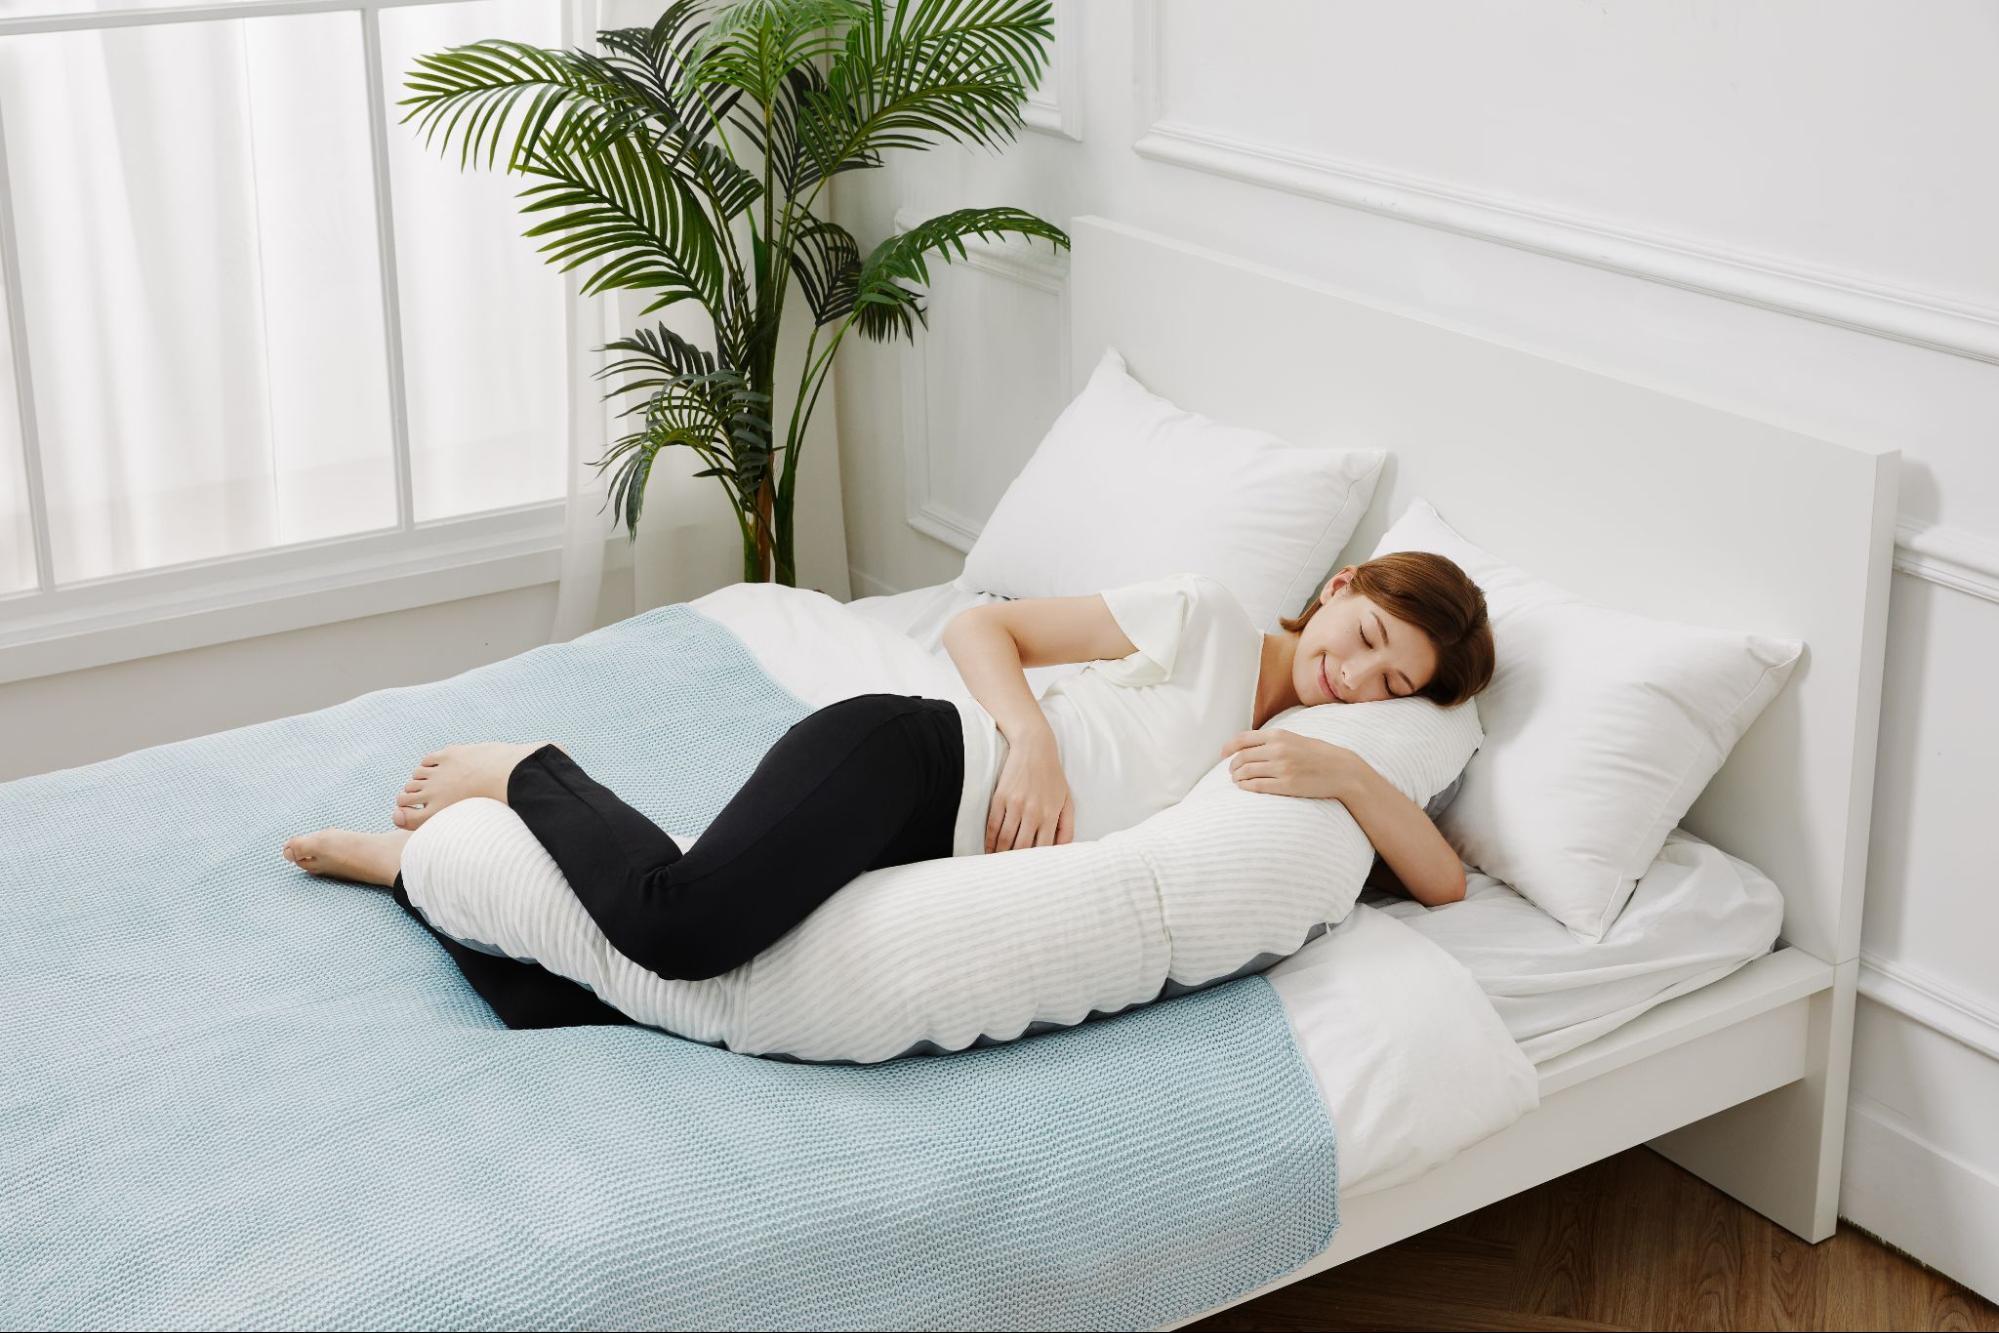 Sleeping Lumbar Pillow Bed Lumbar Pad Pregnant Woman Pillow